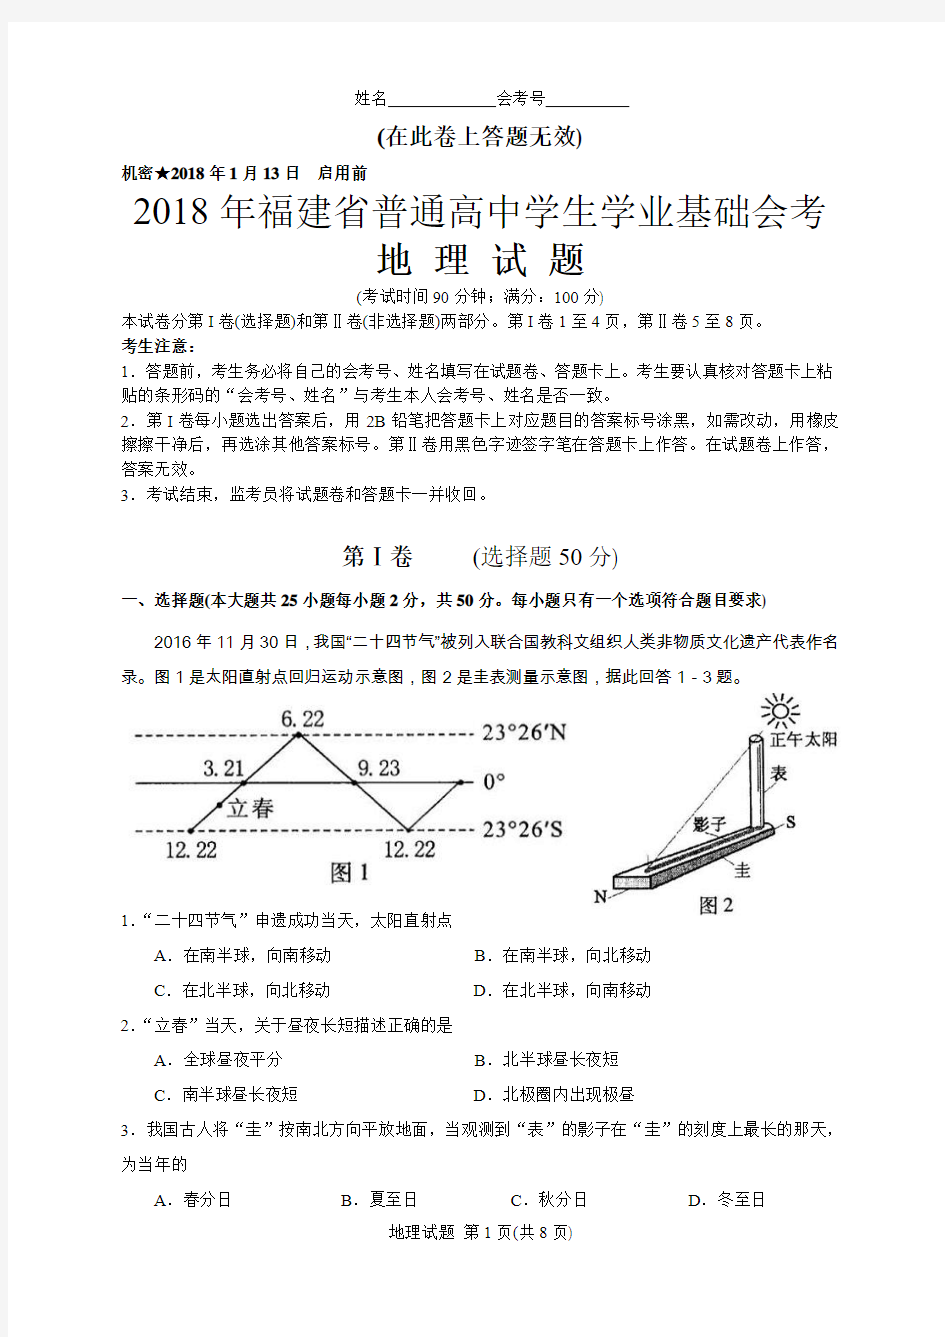 2018年1月福建省普通高中学生学业基础会考地理试题(含答案评分标准)